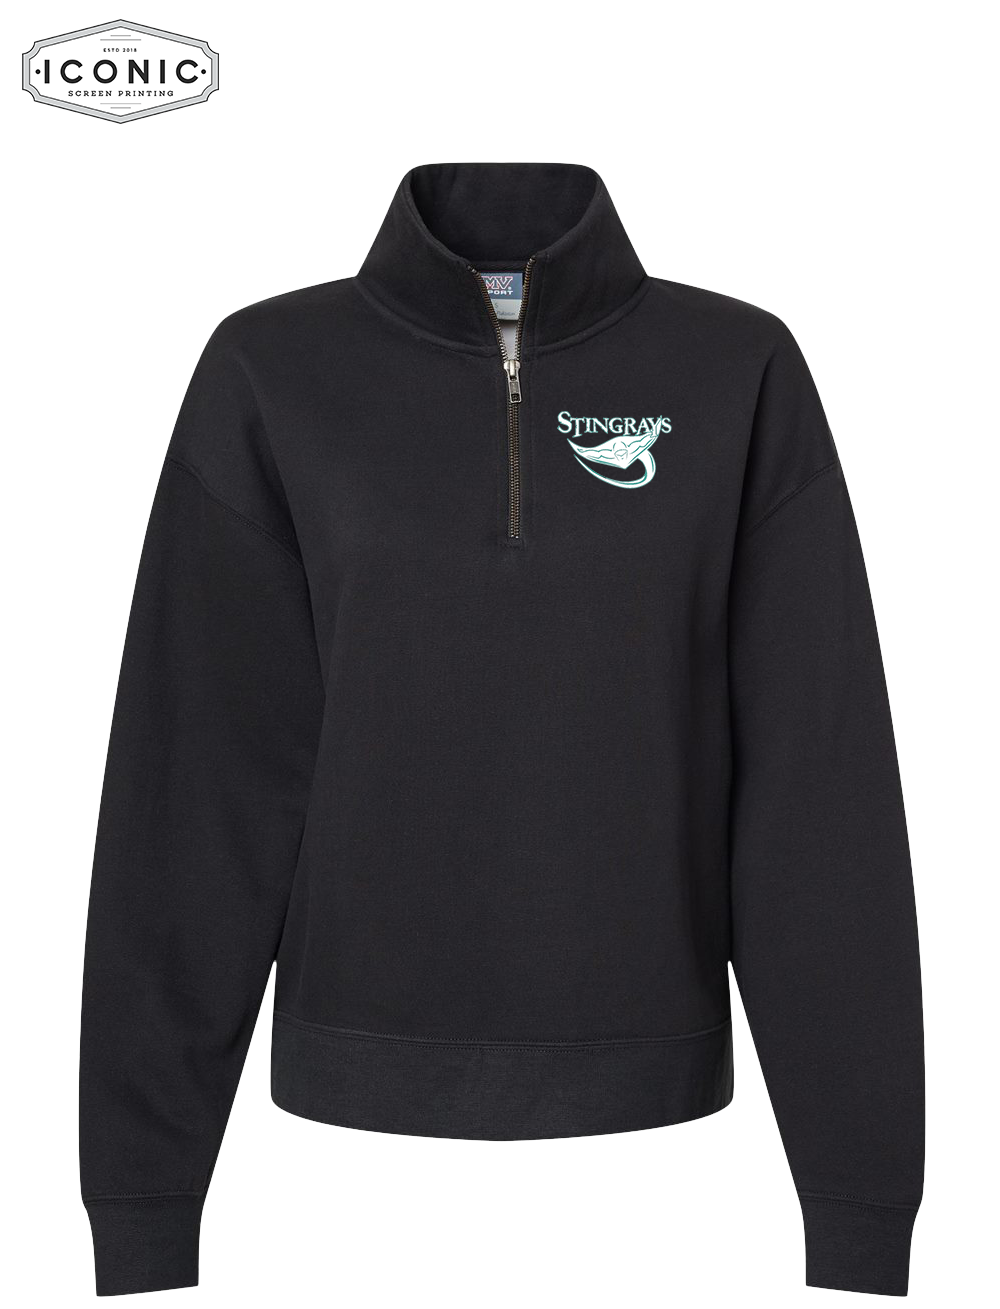 Stingrays - Women's Sueded Fleece Quarter-Zip Sweatshirt